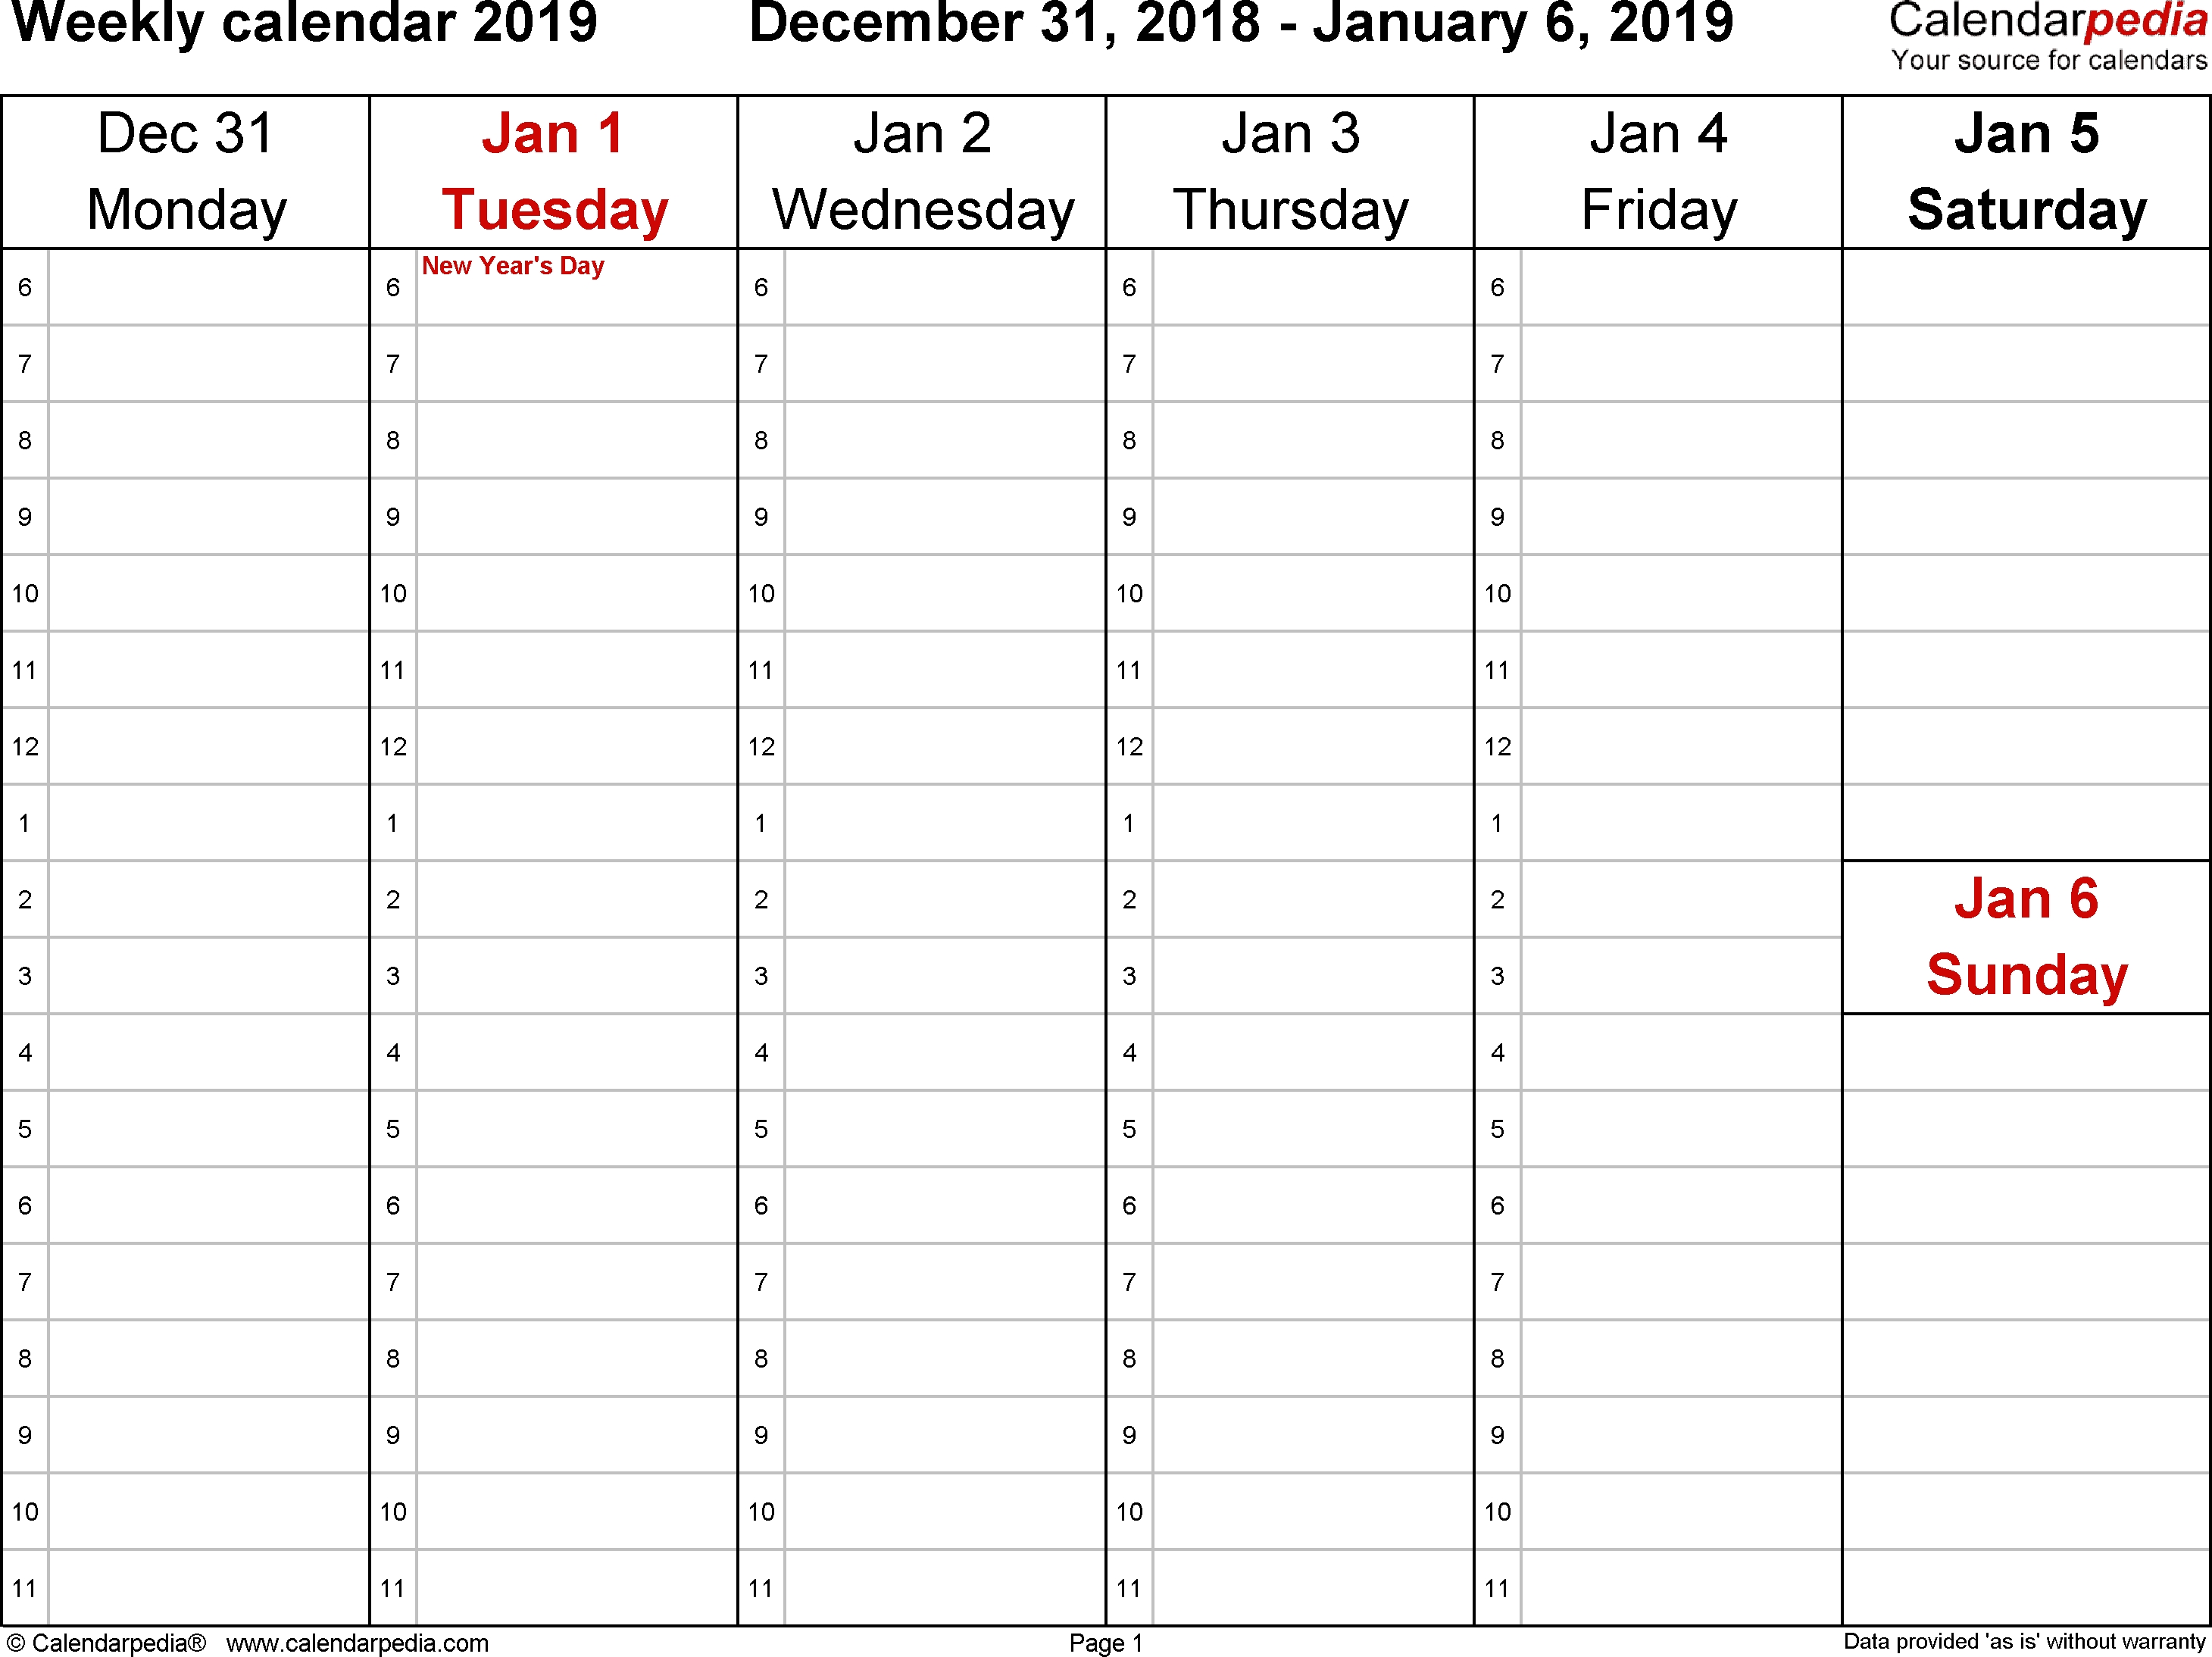 Weekly Calendar 2019 For Word - 12 Free Printable Templates regarding 4 Week Calendar To Print